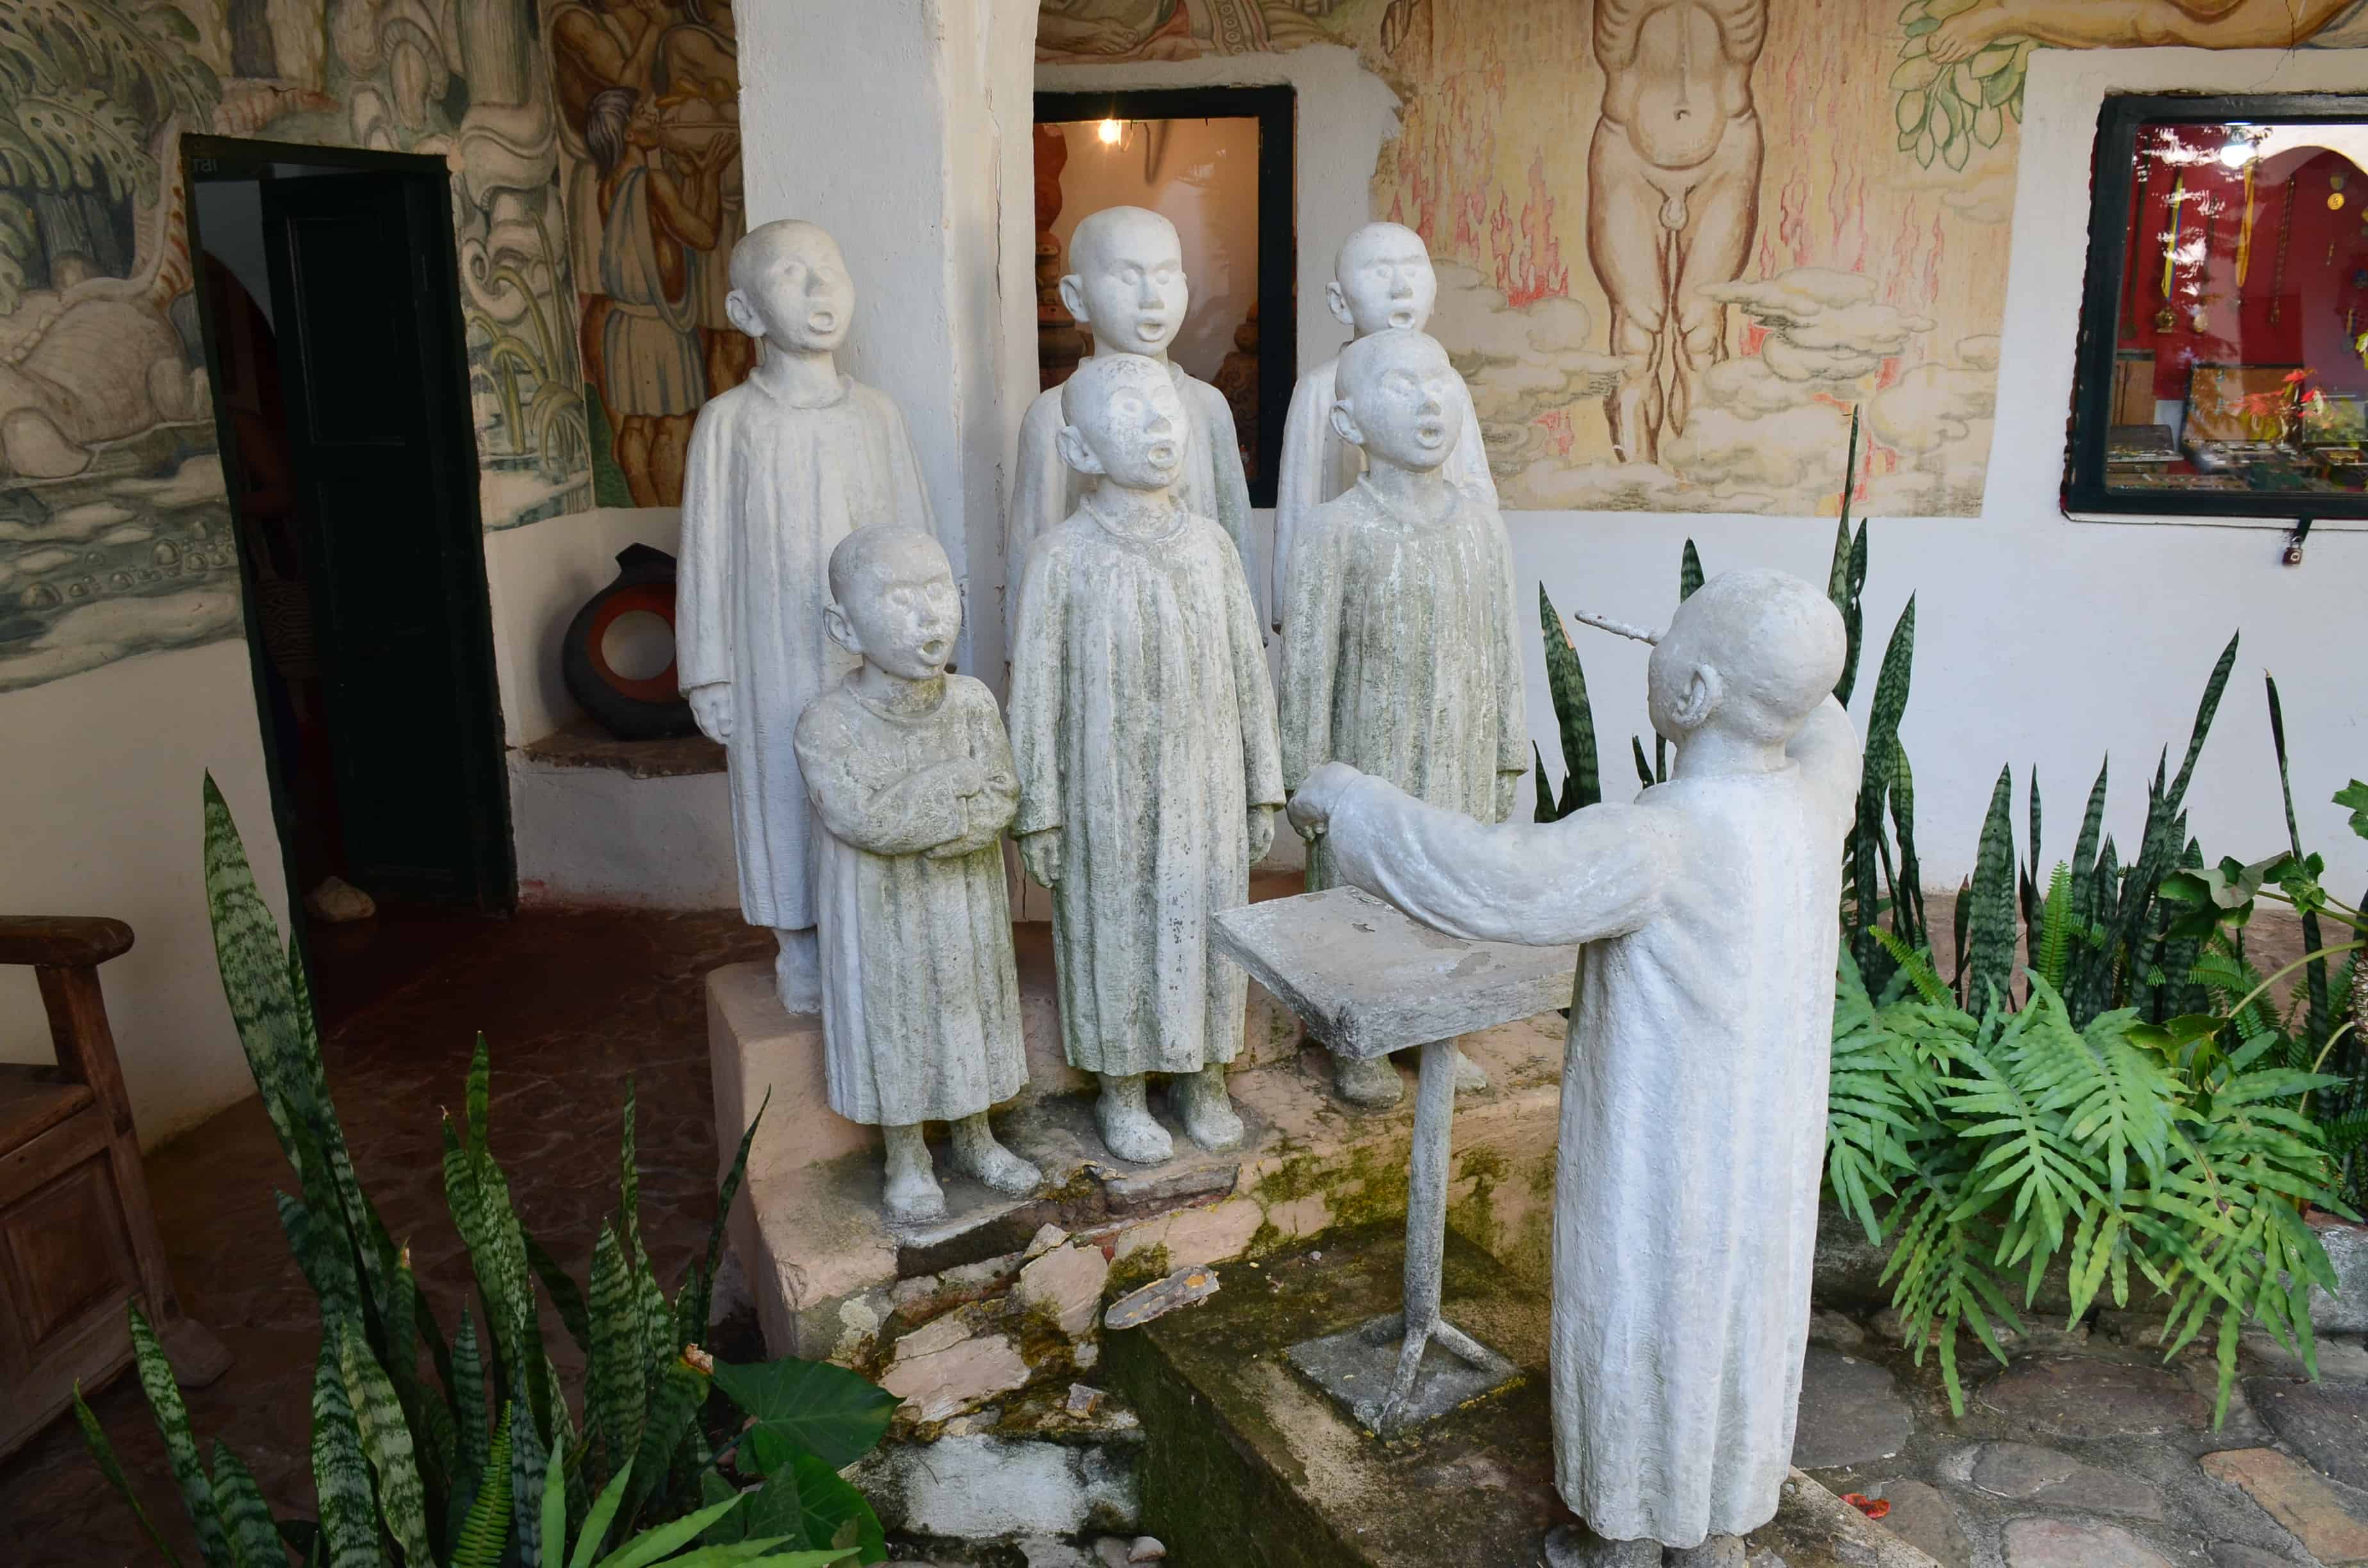 Sculpture at Casa Museo Luis Alberto Acuña in Villa de Leyva, Boyacá, Colombia